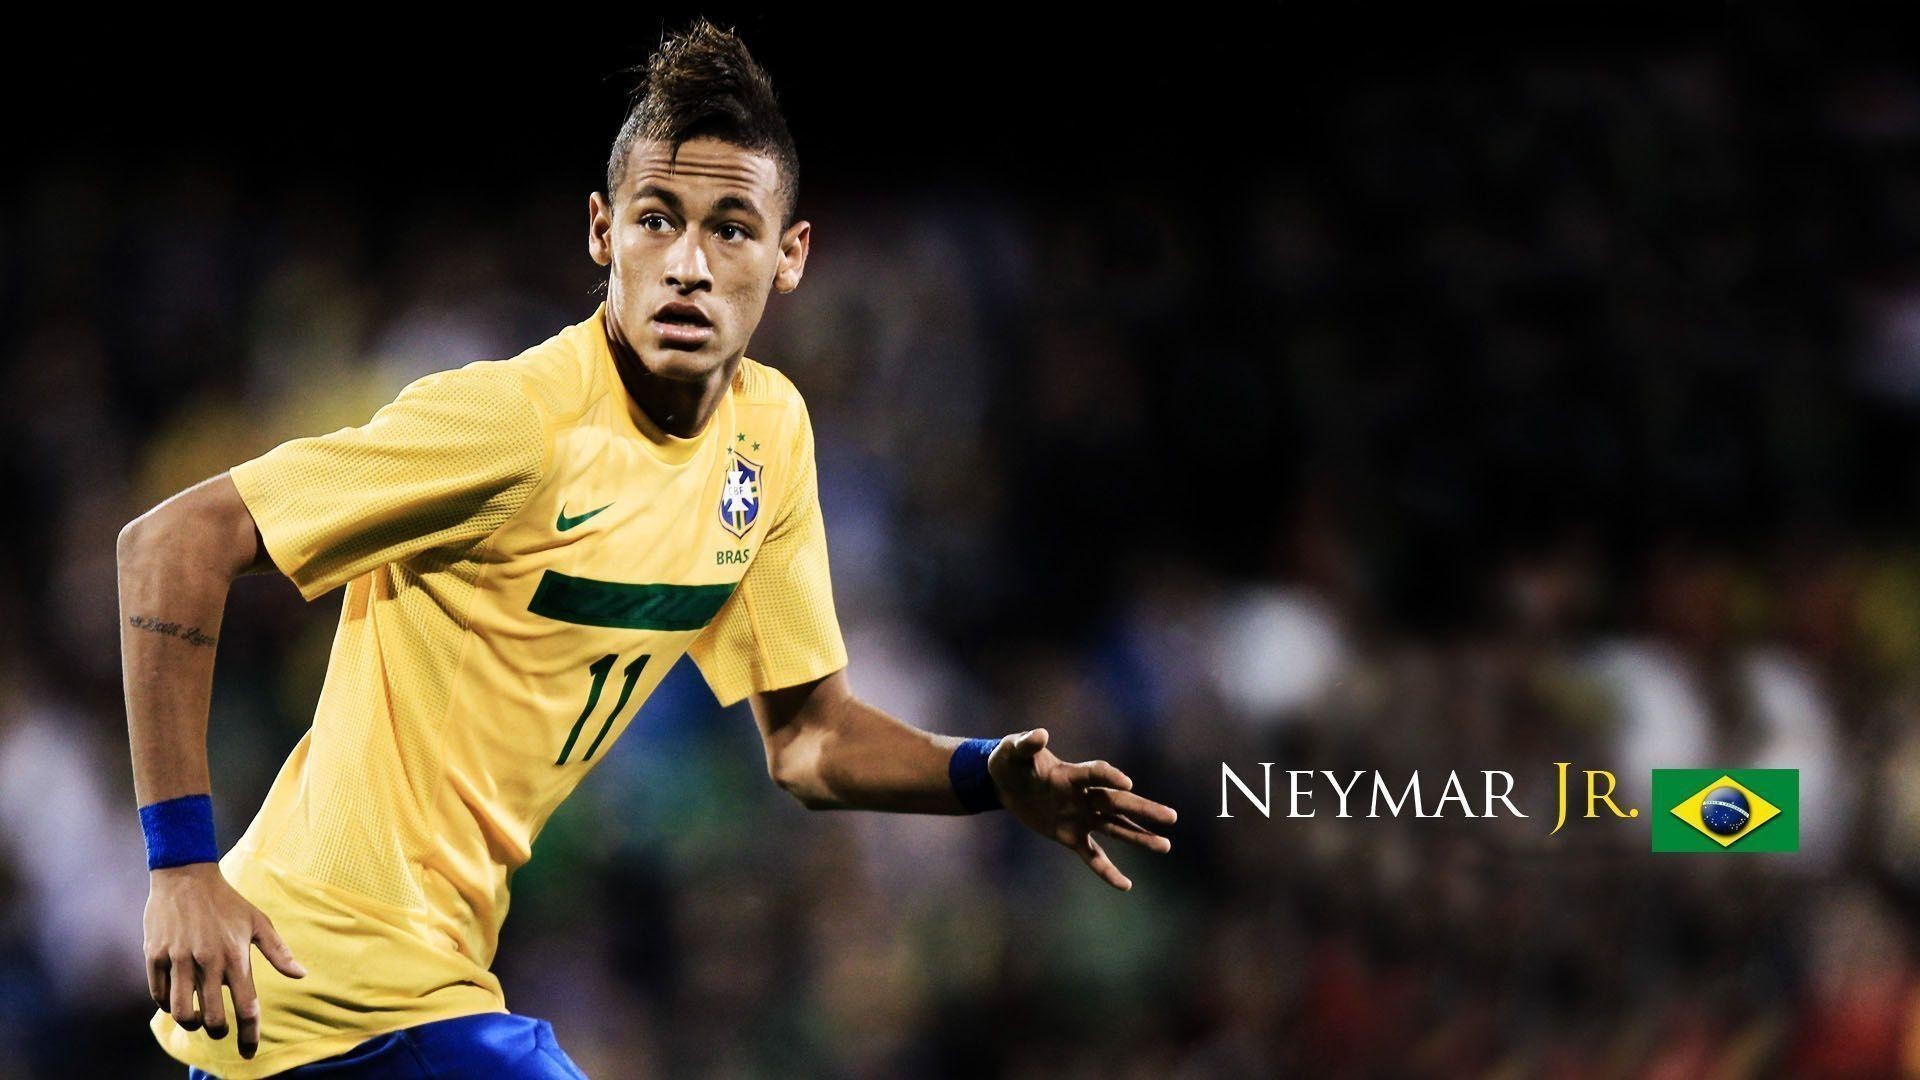 1920x1080 Neymar Brazil 2014 Scoring Wallpaper Widescreen Wallpapers High 1920x1080